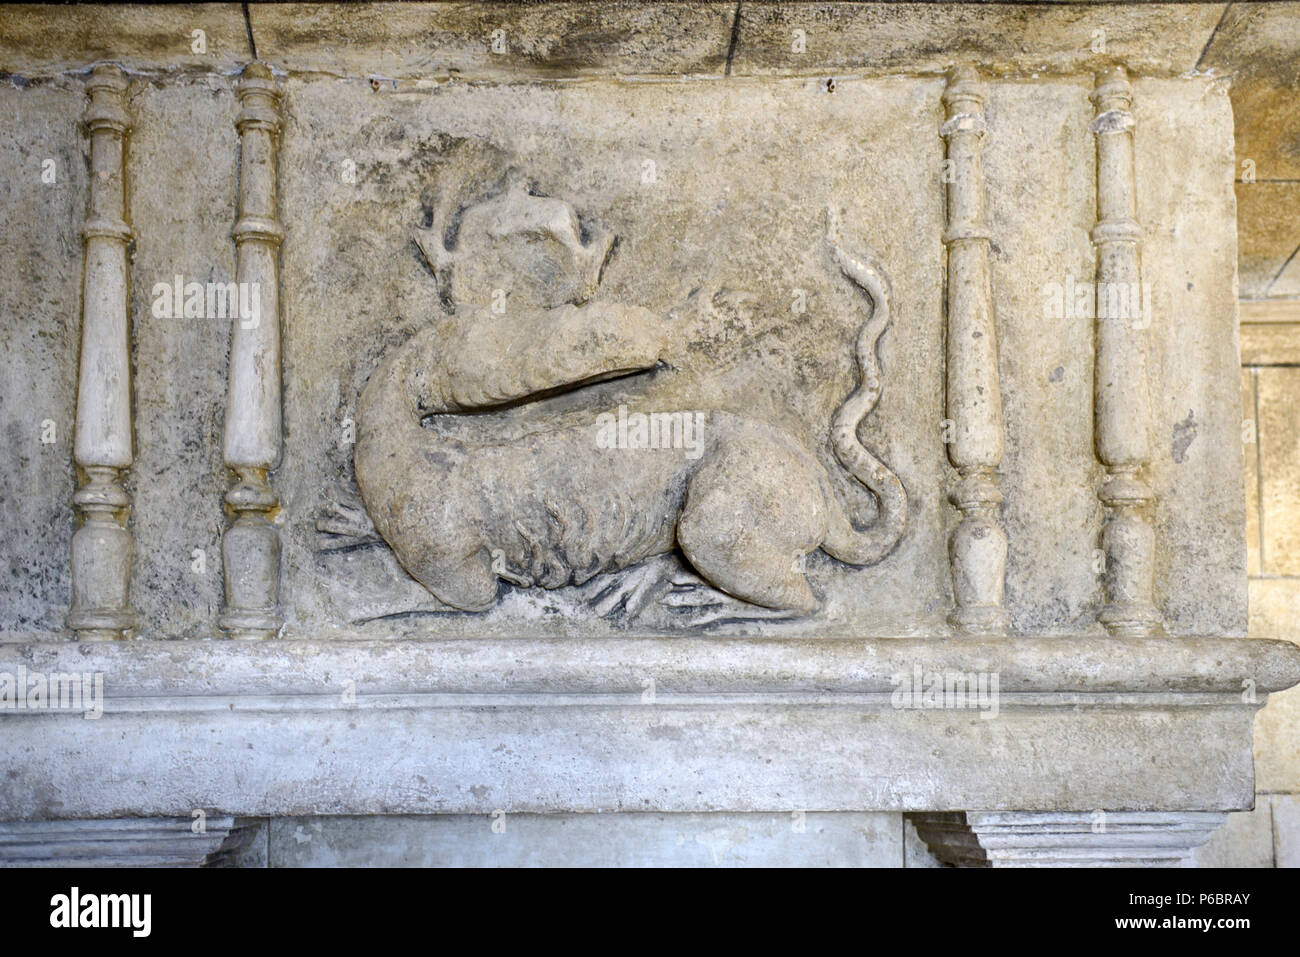 La sculpture sur pierre de Dragon, Bas-Relief ou Dragon sculpté sur cheminée dans garde-manger Château de Grignan Drôme Provence France Banque D'Images